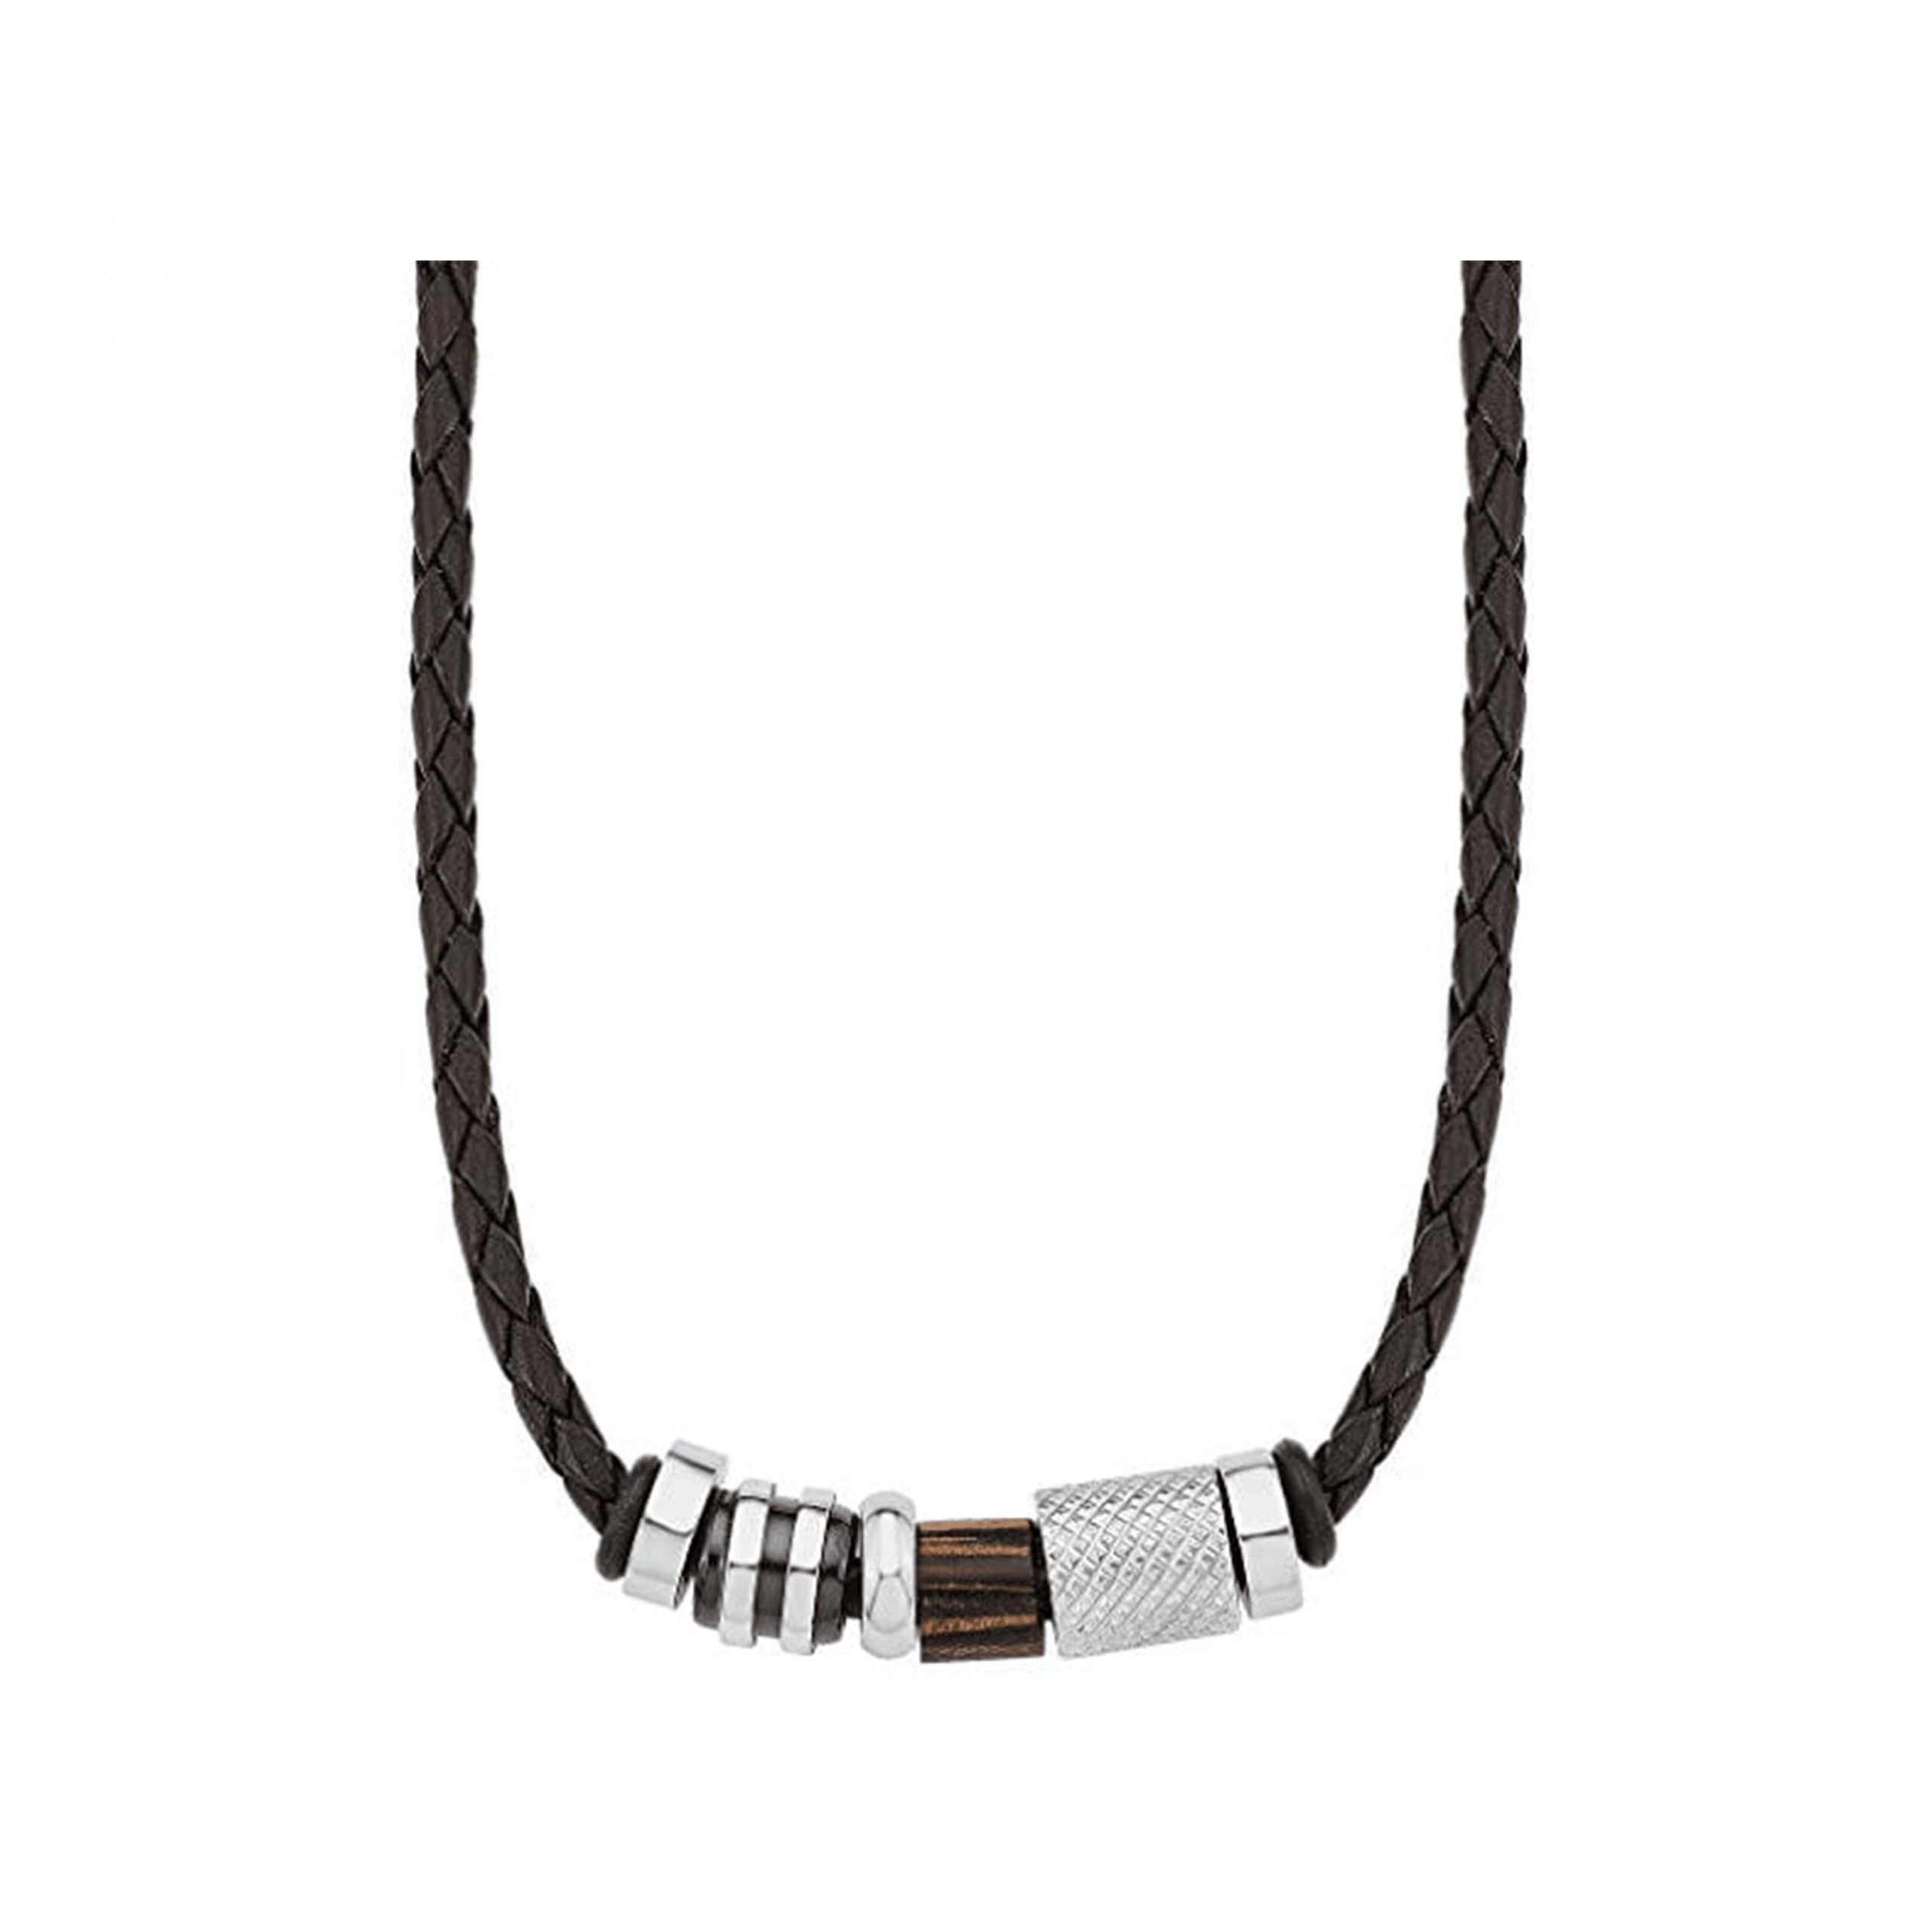 Amor Herren-Kette Lederband braun Lederkette 45 Beads Edelstahl mit cm Anhänger Holz